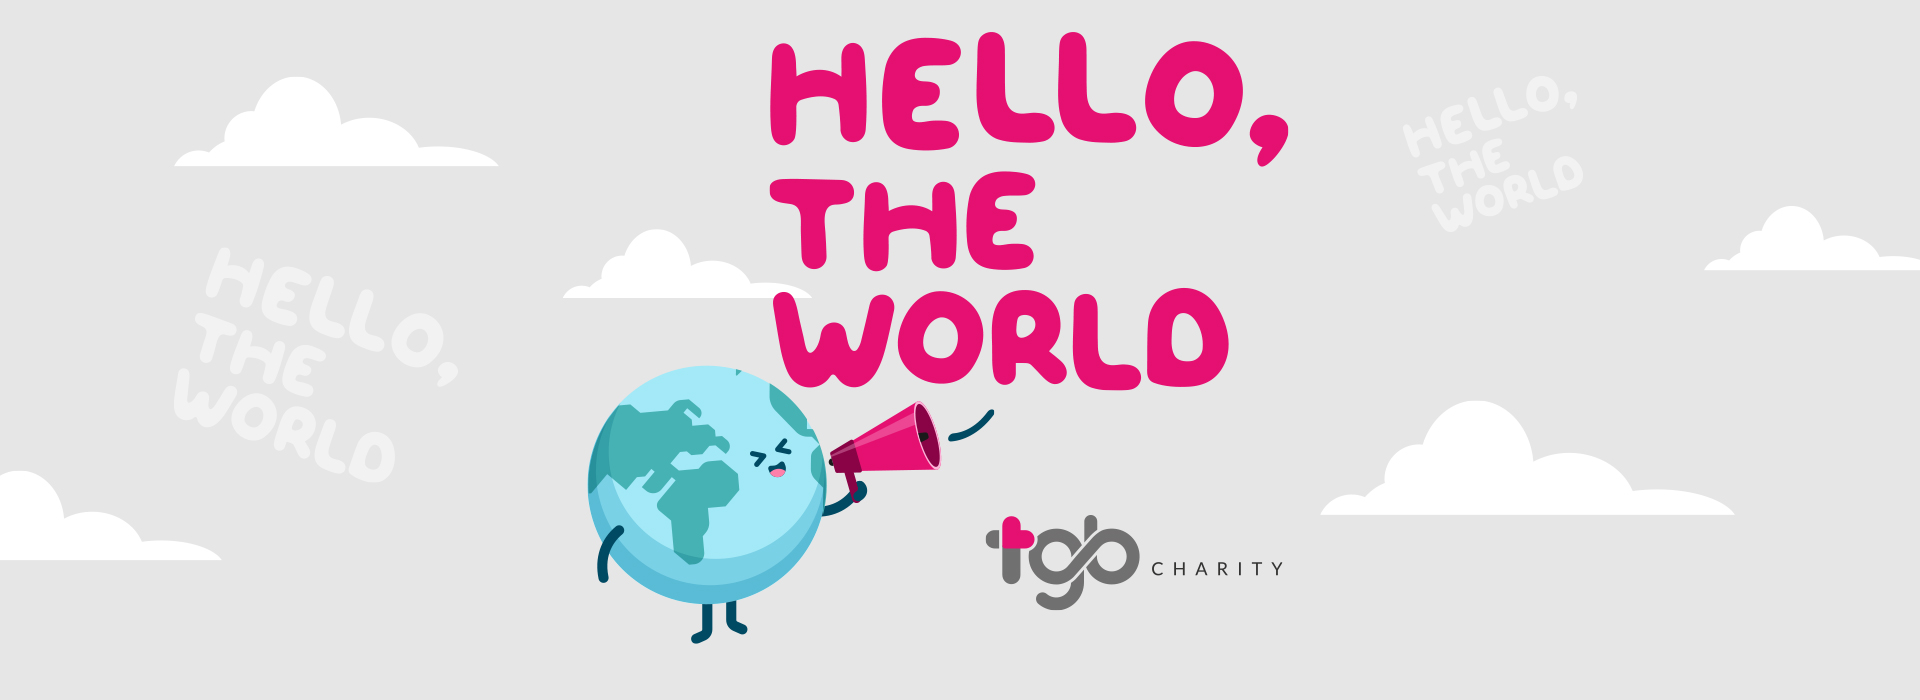 TGB Charity全新官方网站向大家说声HELLO!